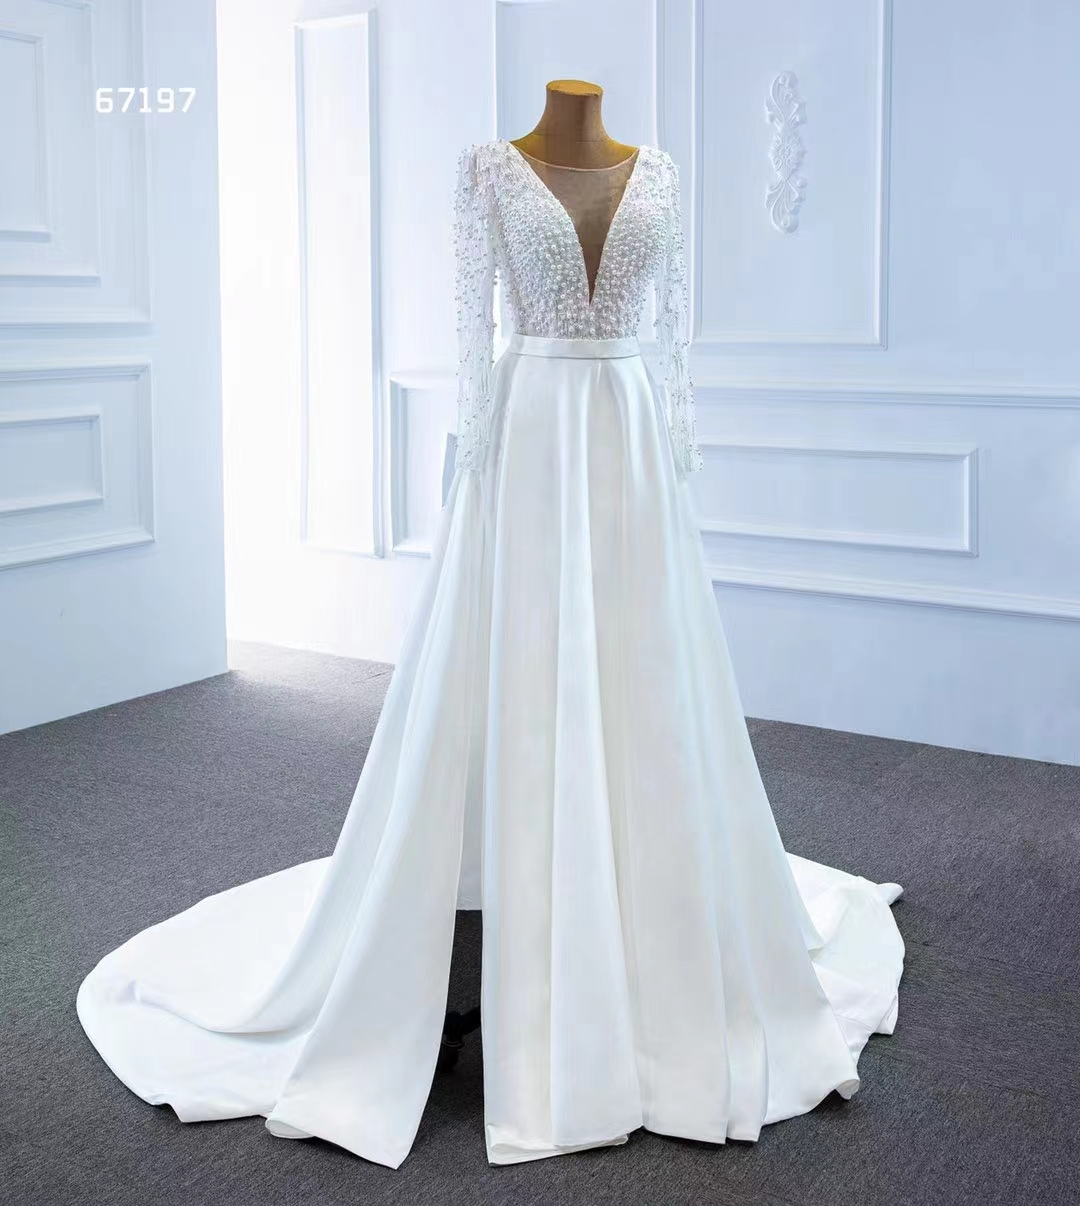 Elegantes telas de vestidos de novia de vestidos de novia con cuentas y lentejuelas SM67197